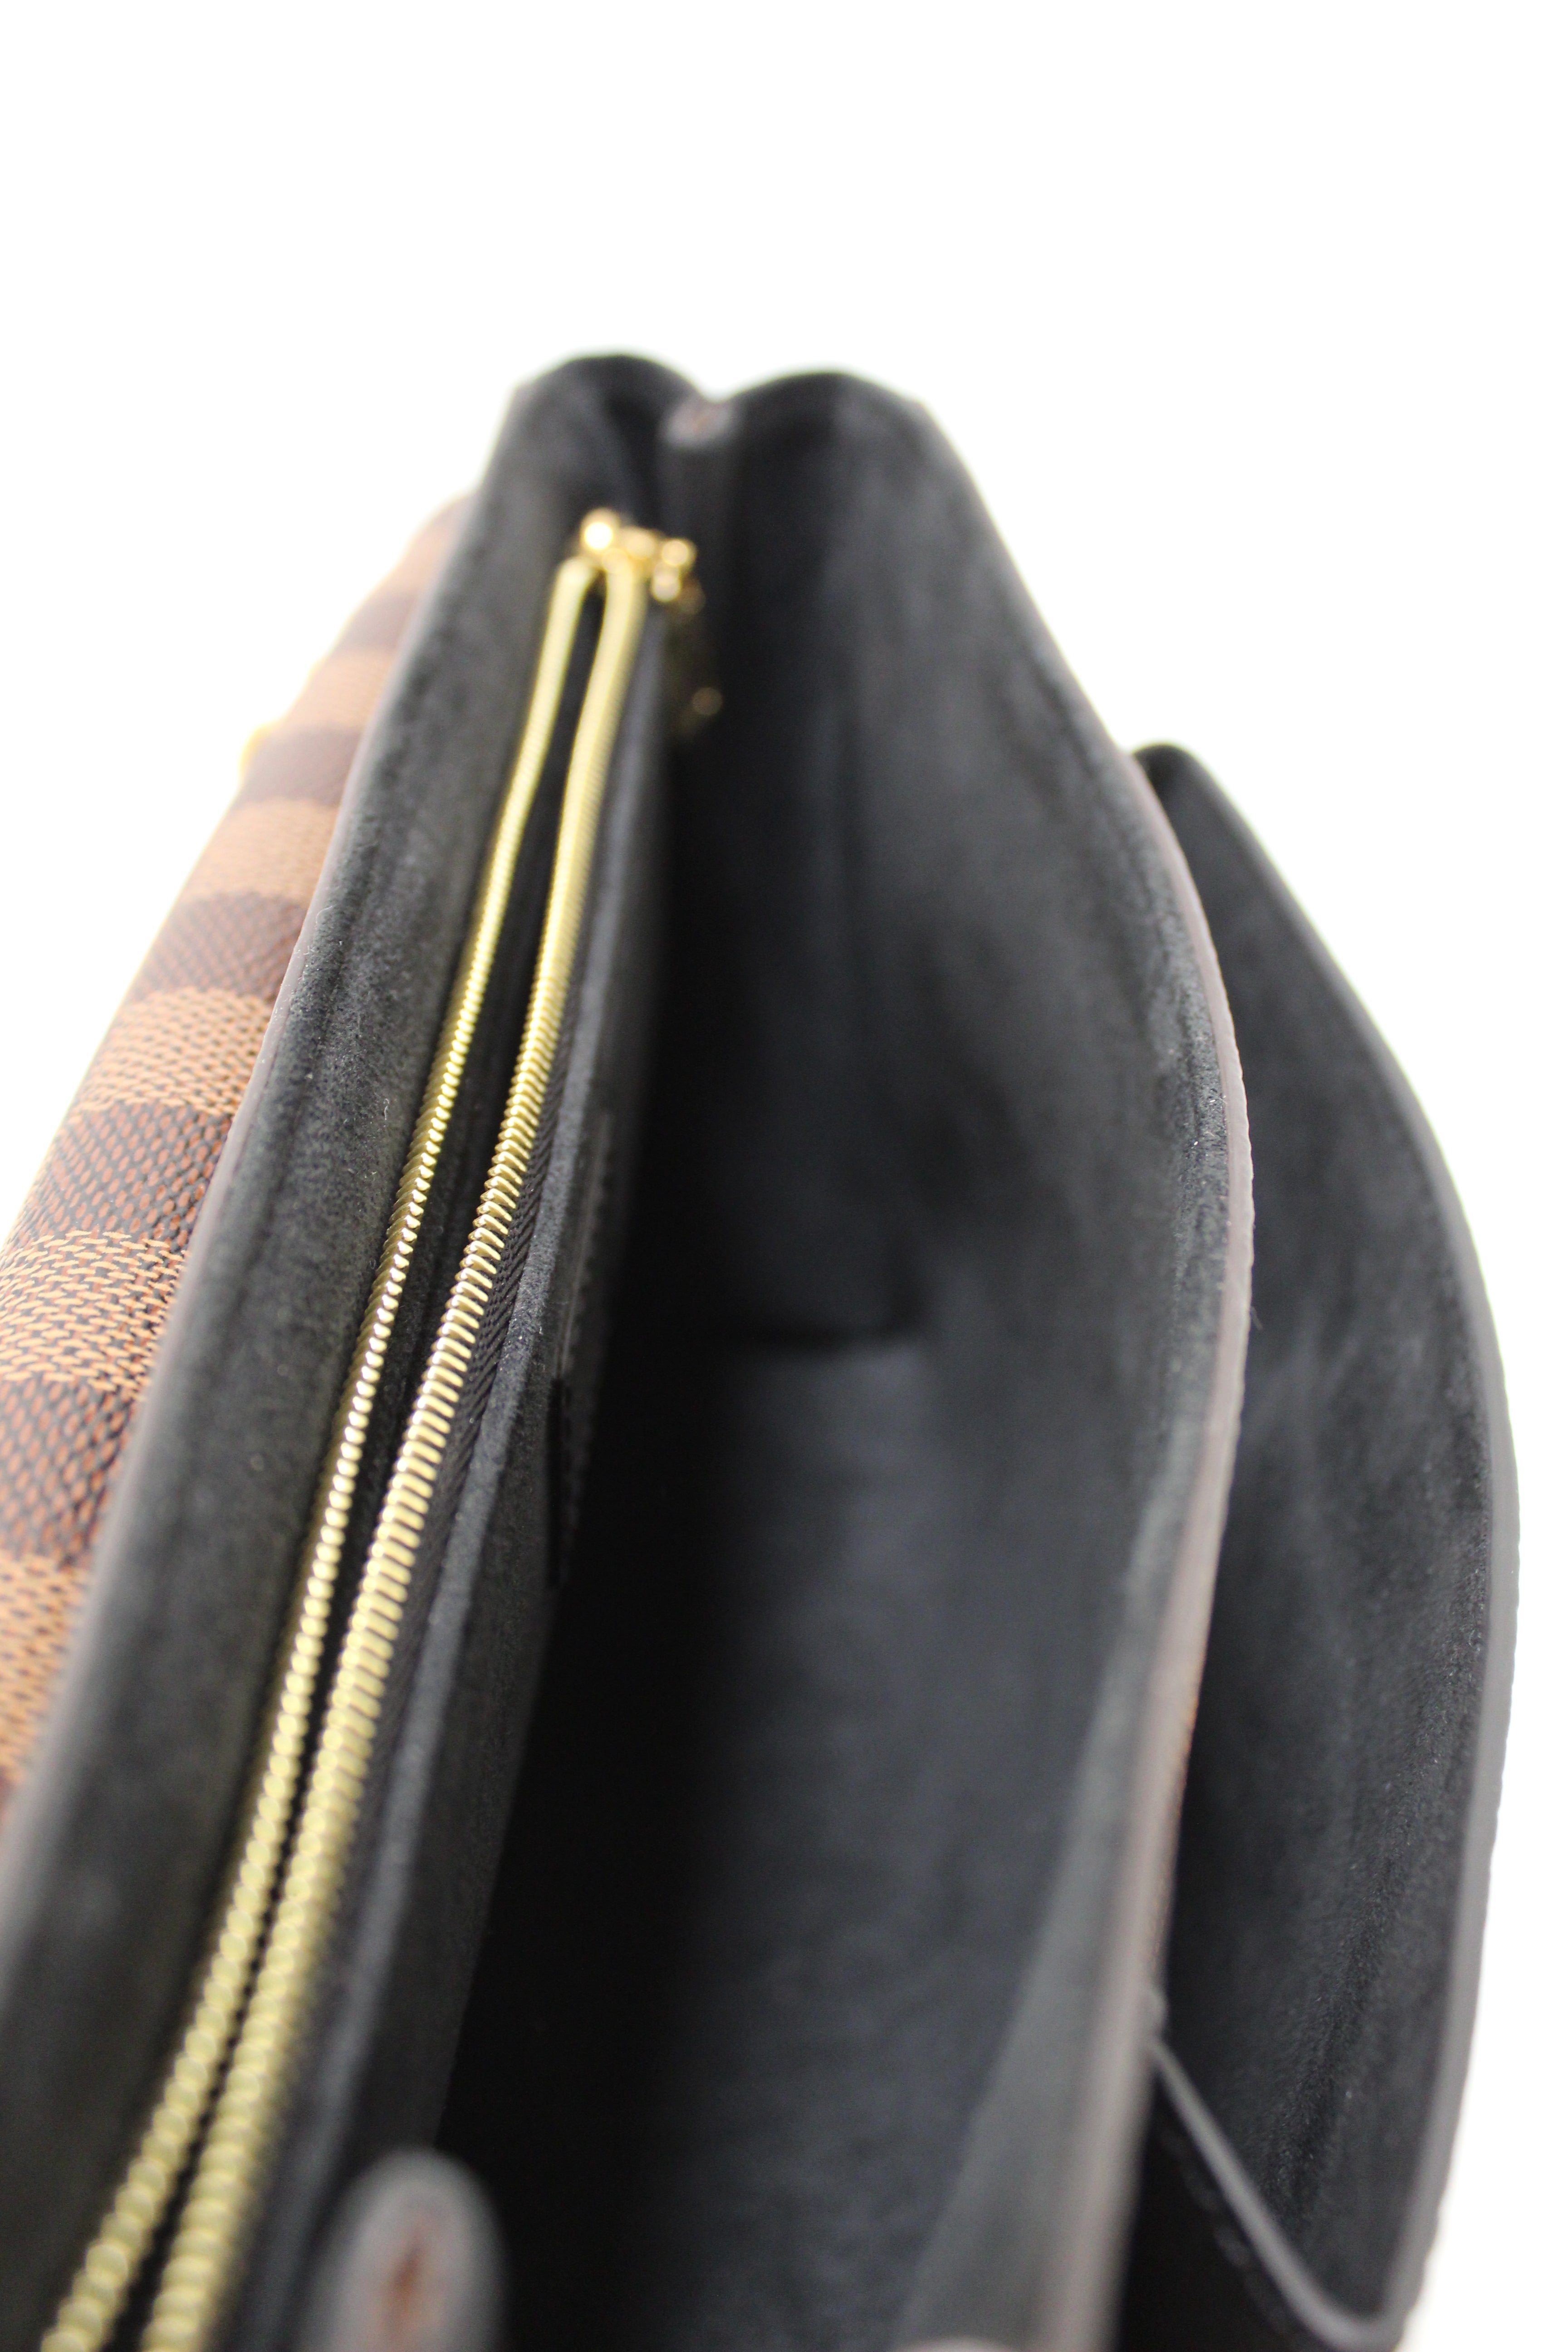 Authentic Louis Vuitton Damier Ebene Canvas with Black Soft Calf Leather Vavin PM Bag